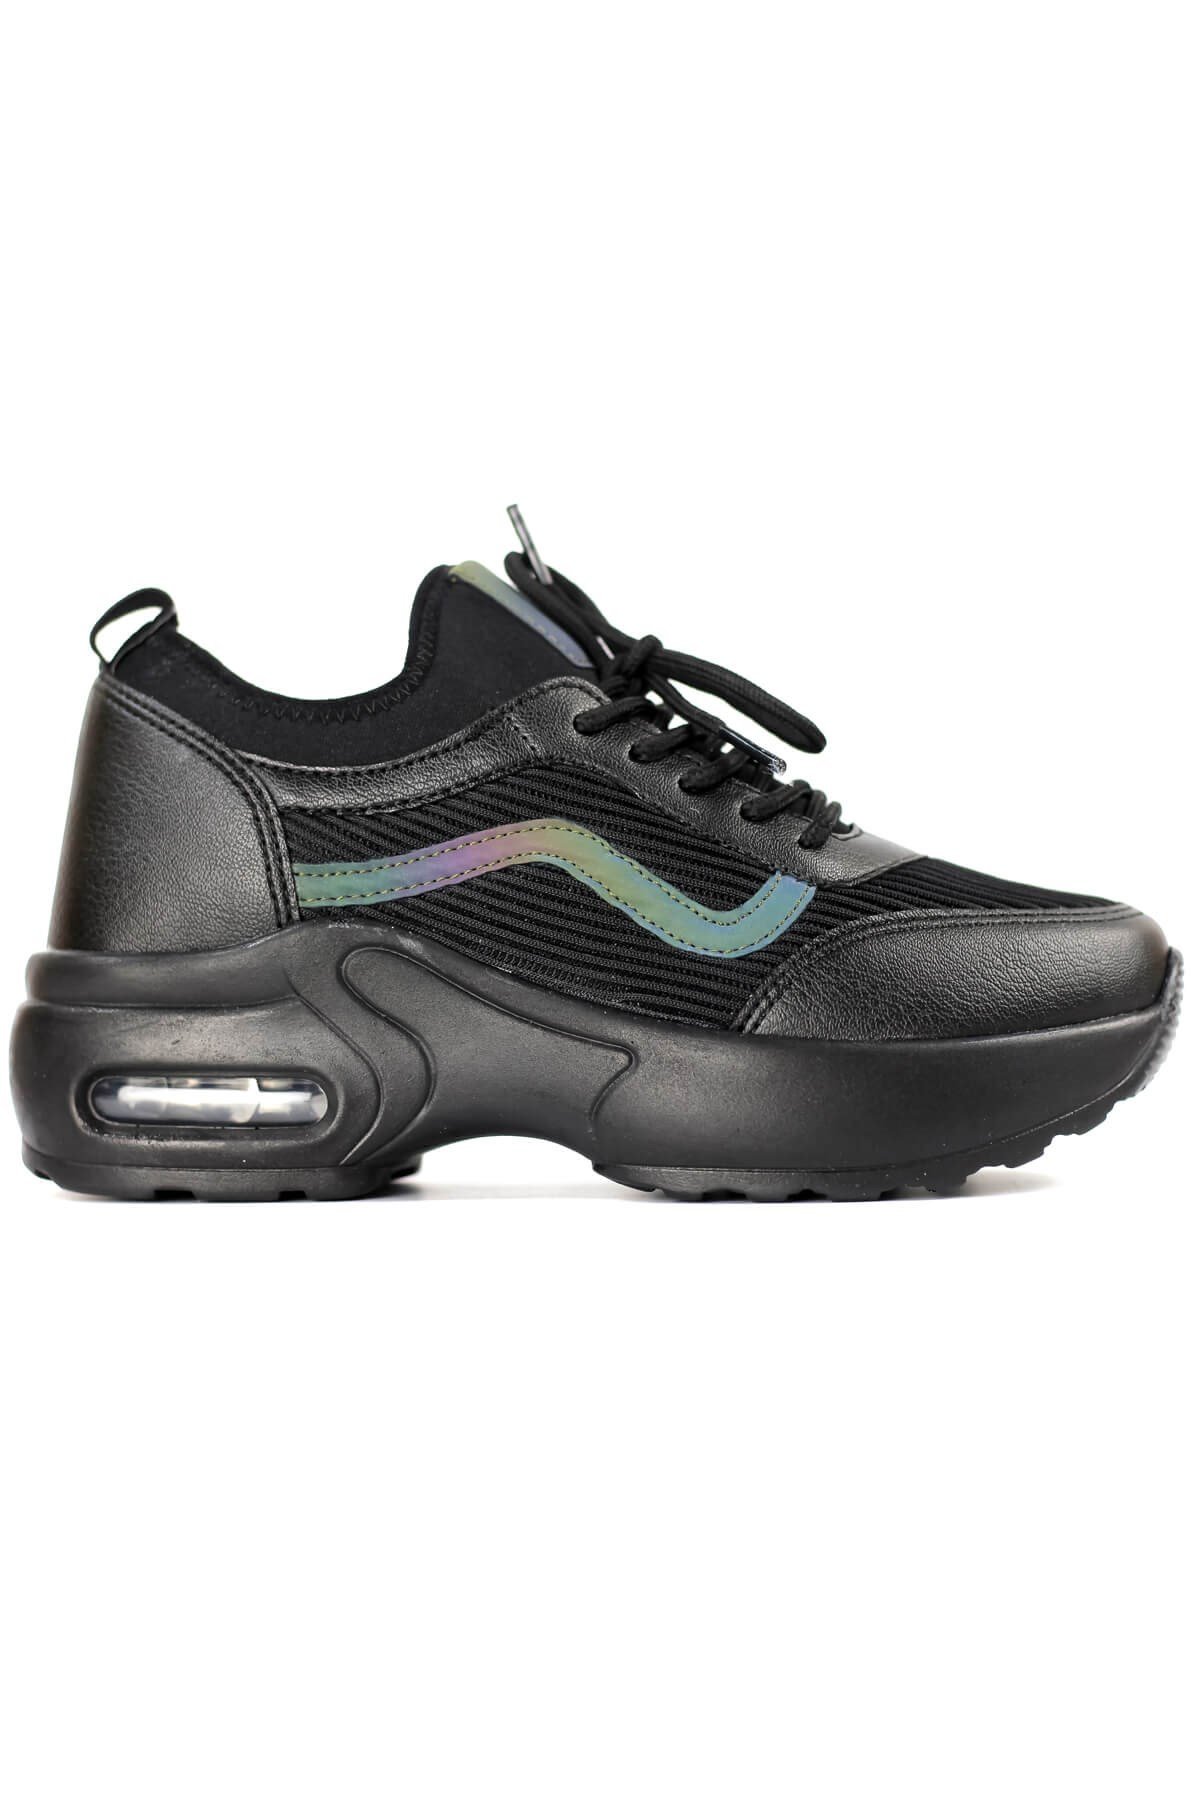 Flet Günlük Air Sneaker Ayakkabı Kadın Siyah 0121